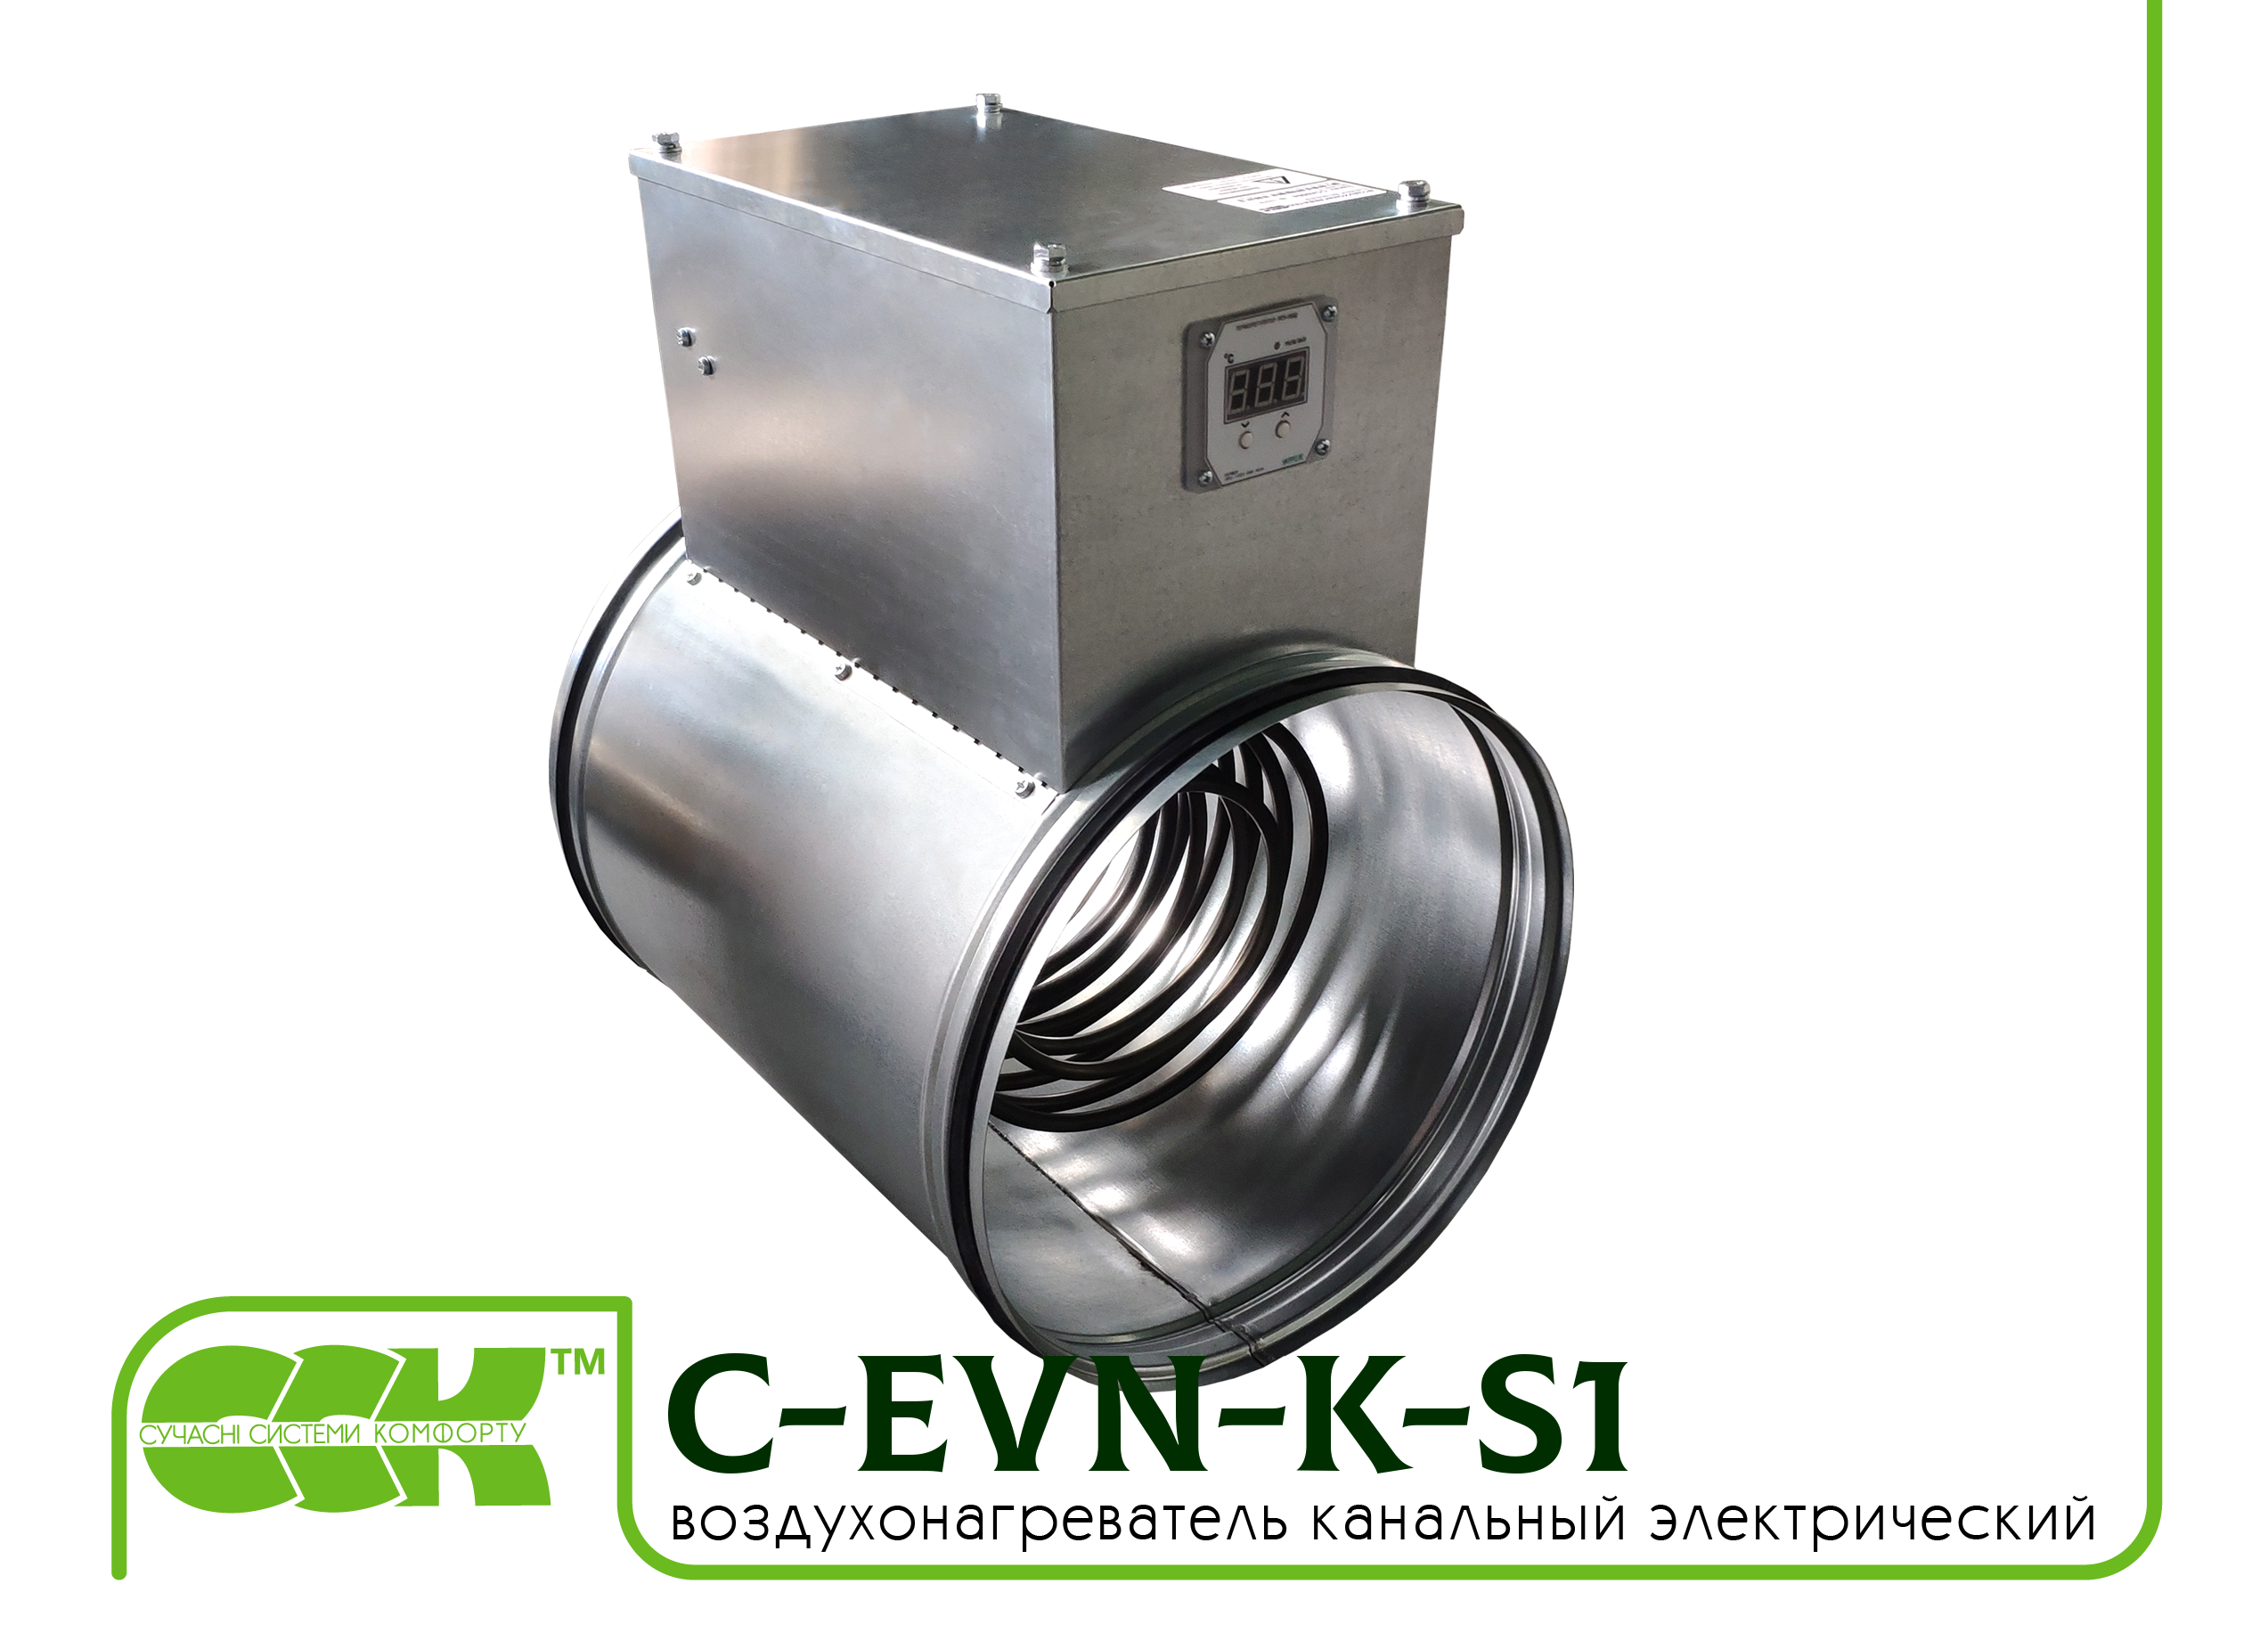 Воздухонагреватель канальный электрический для круглых каналов C-EVN-K-S1-315-9,0